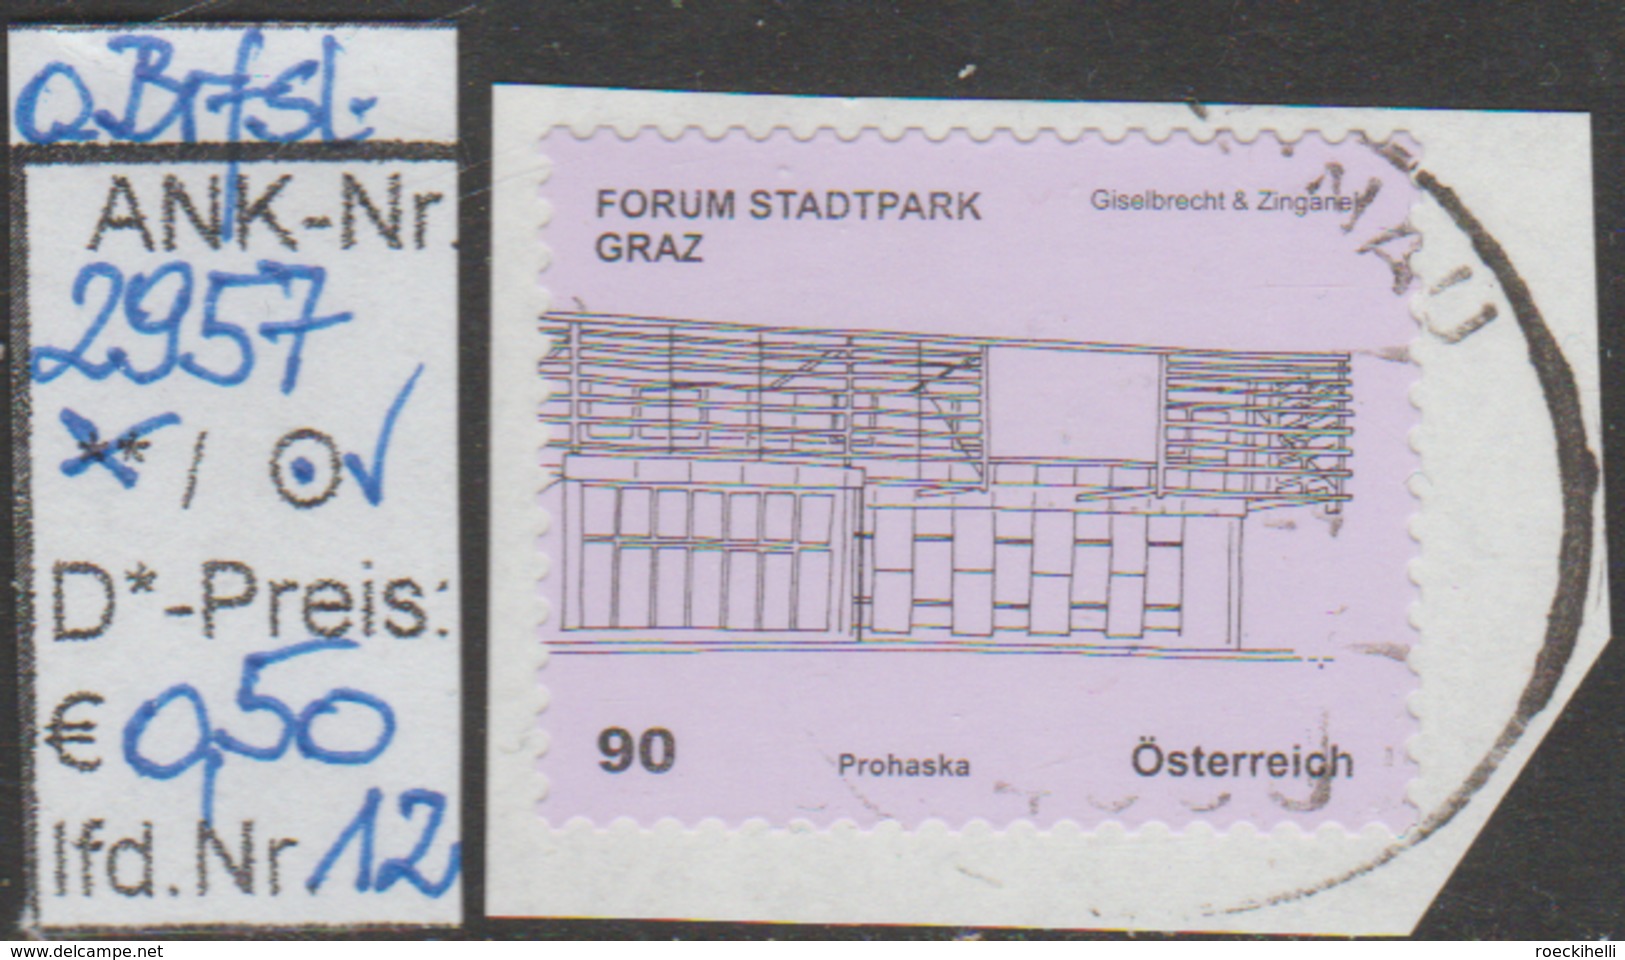 1.5.2011 - skFM/DM "Kunsthäuser - Forum Stadtpark, Graz "  - o gestempelt - siehe Scan (2957o 01-14)